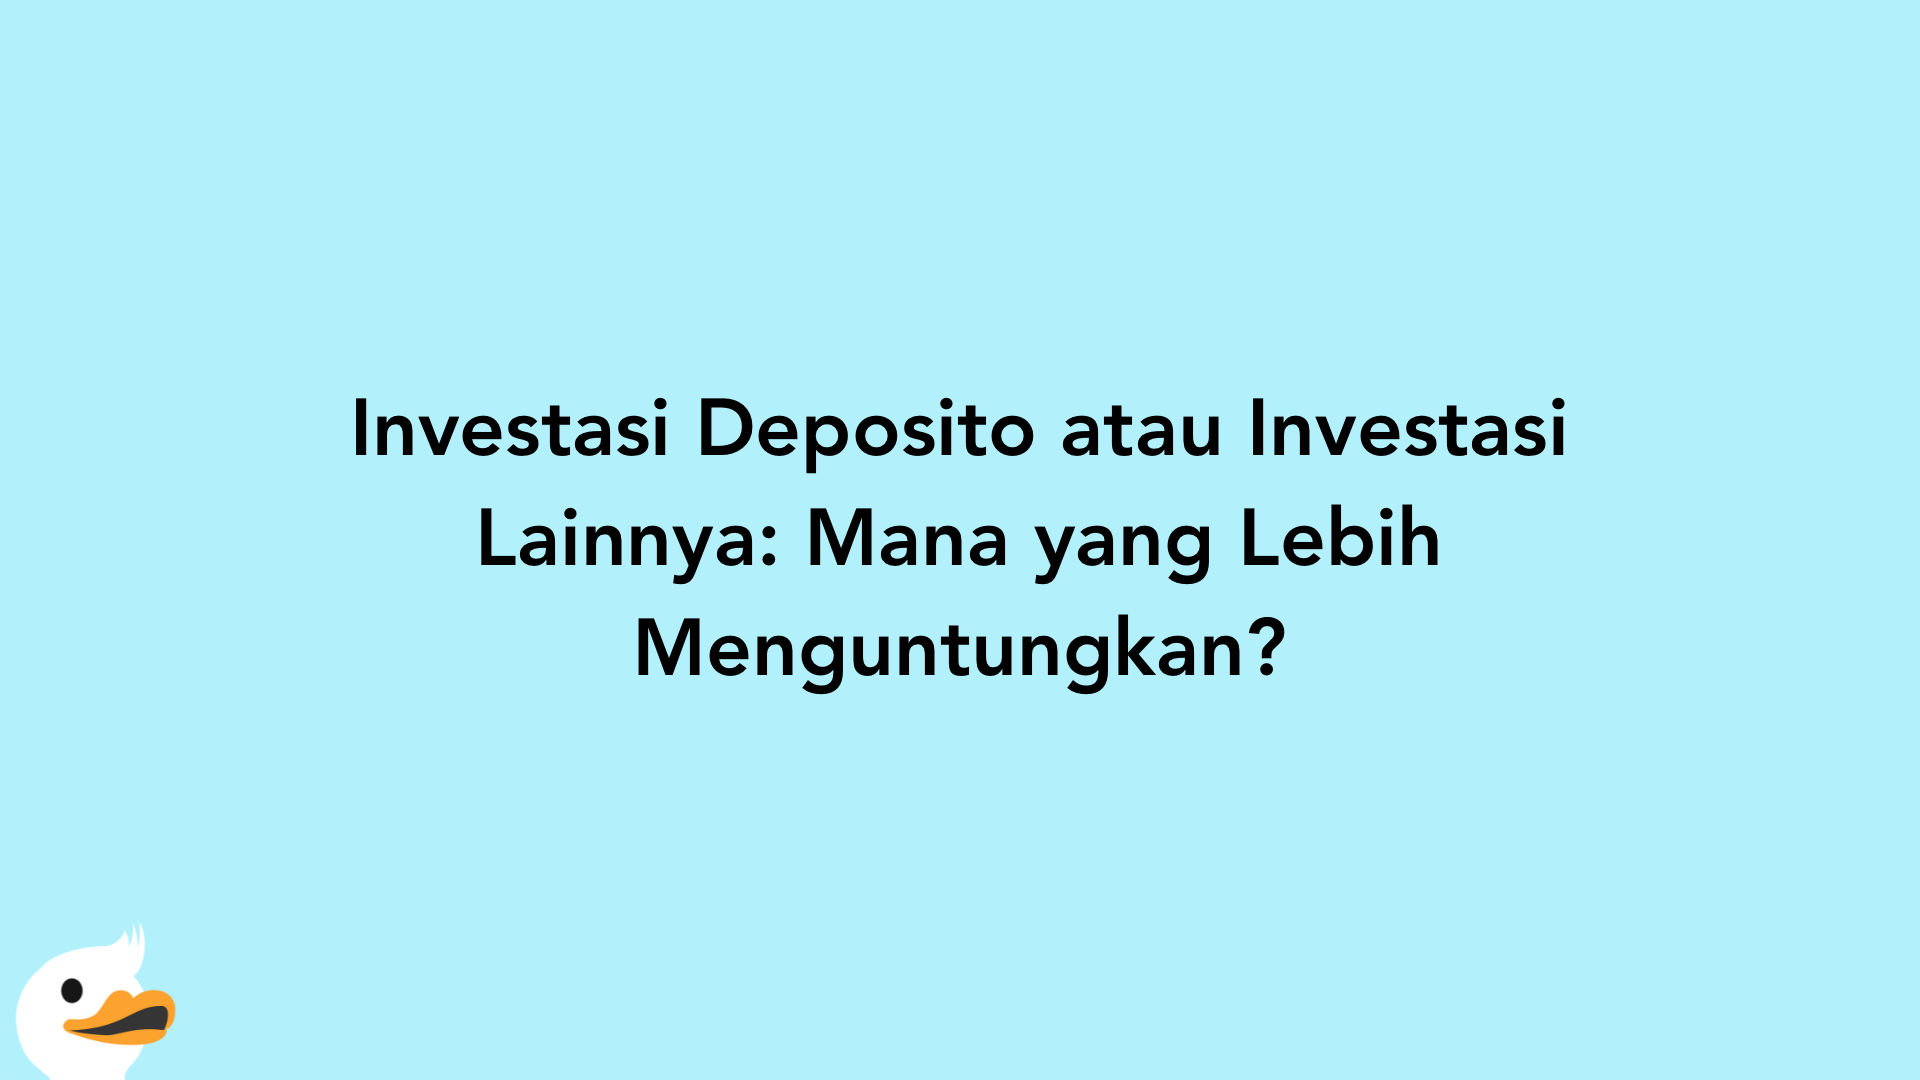 Investasi Deposito atau Investasi Lainnya: Mana yang Lebih Menguntungkan?